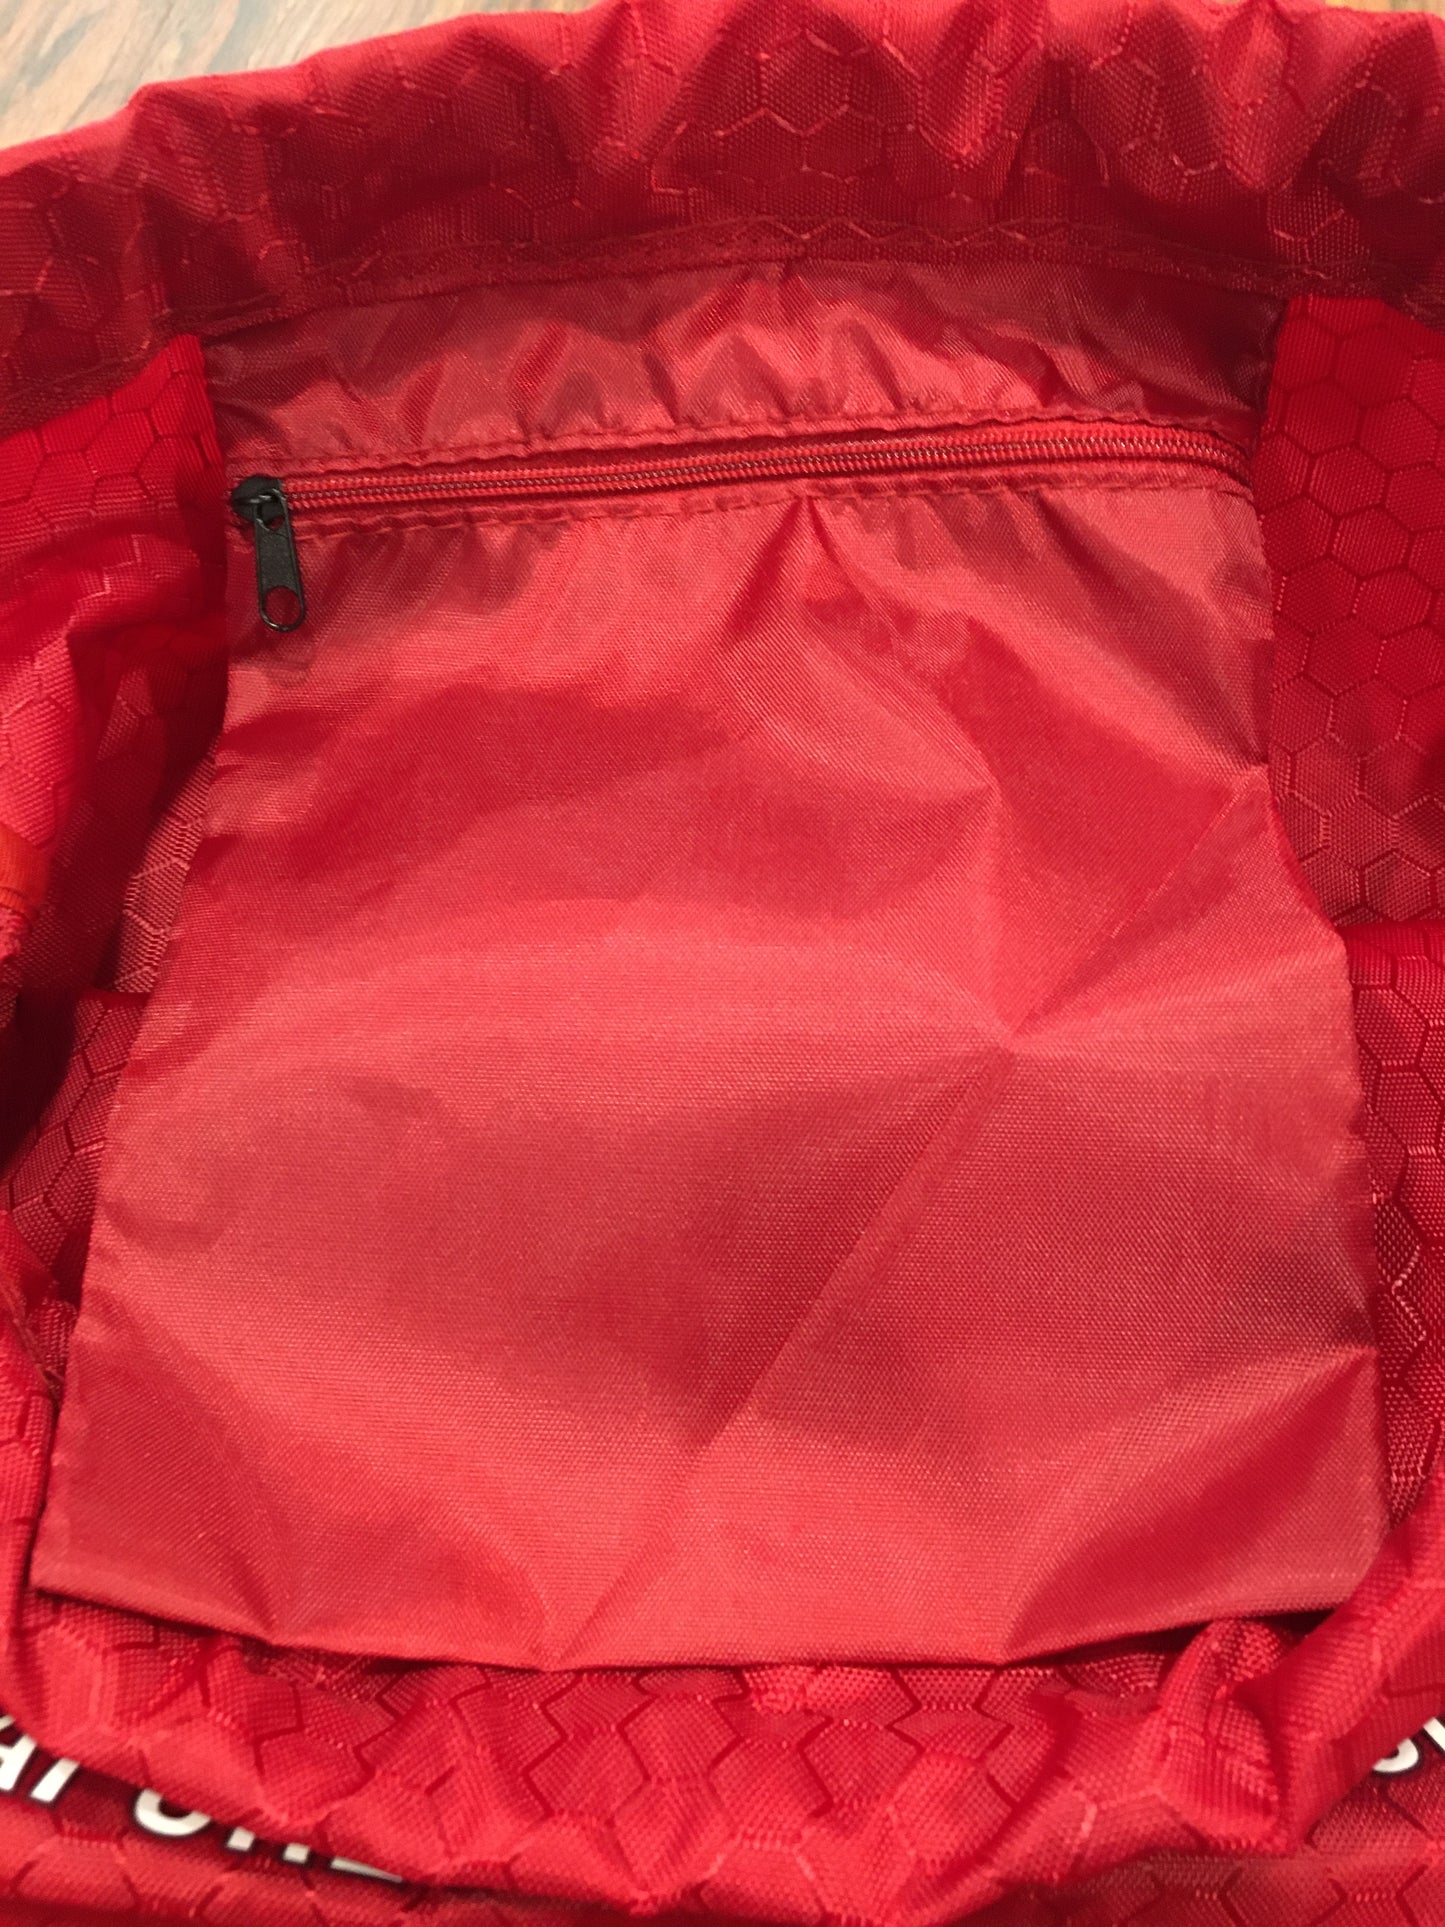 Drawstring Multipurpose Bag / Swim Bag